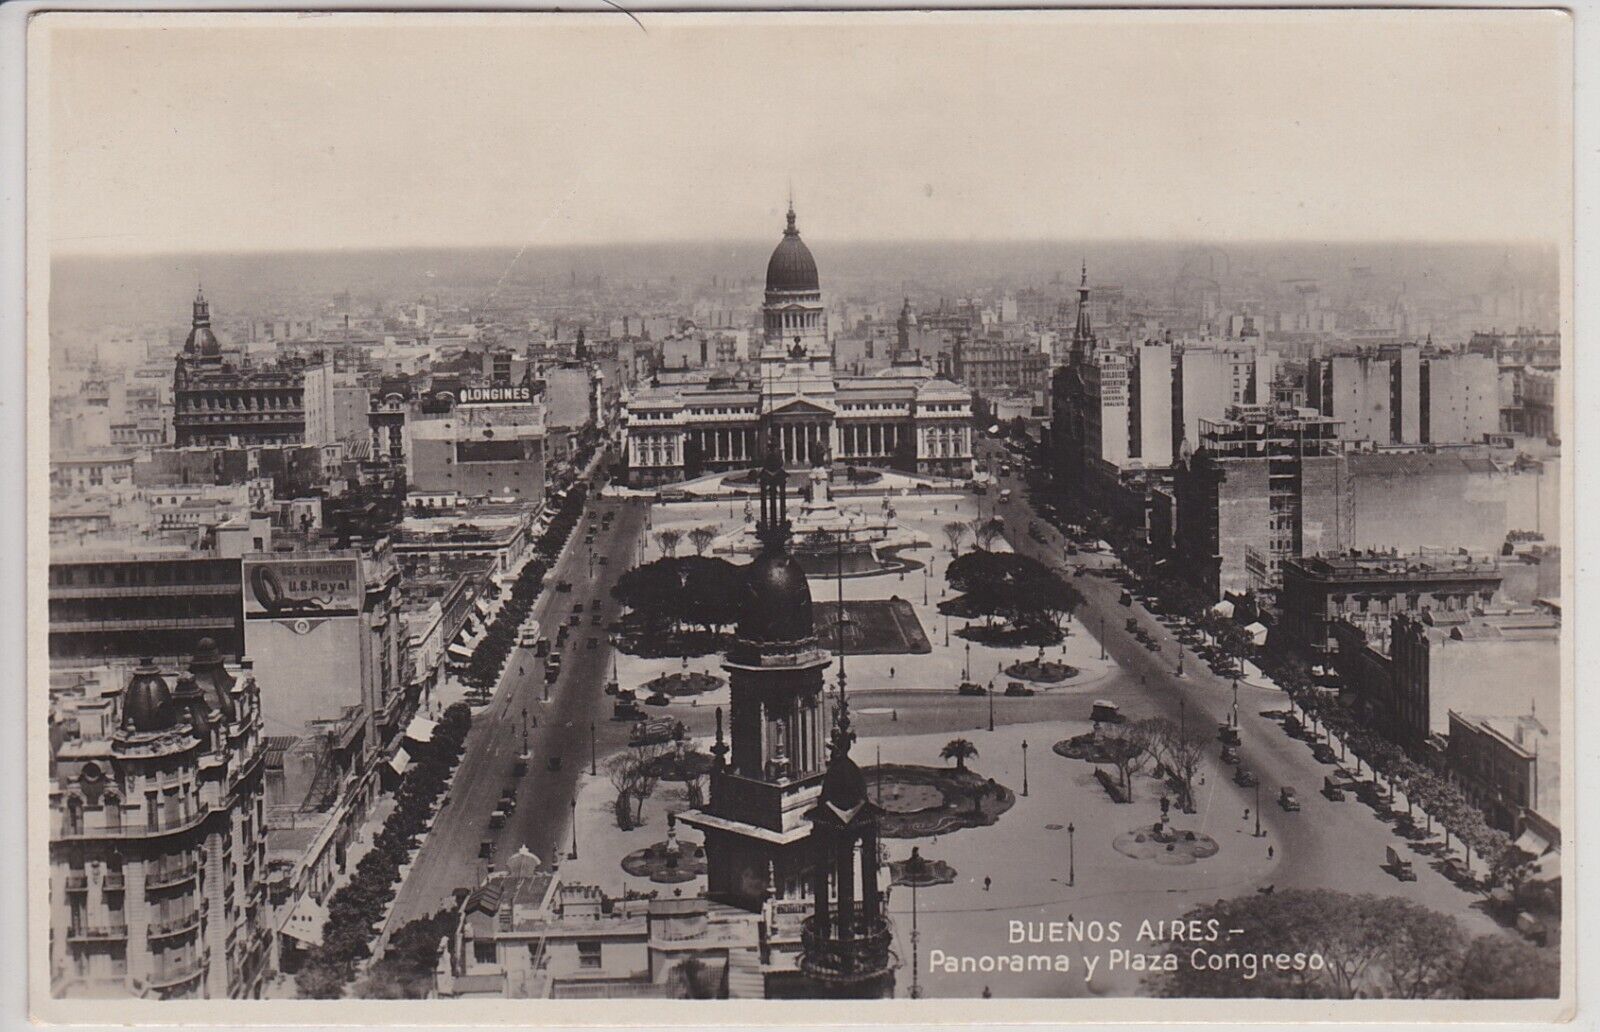 Buenos Aires, Argentina. Panorama y Plaza Congreso Vintage Real Photo Postcard